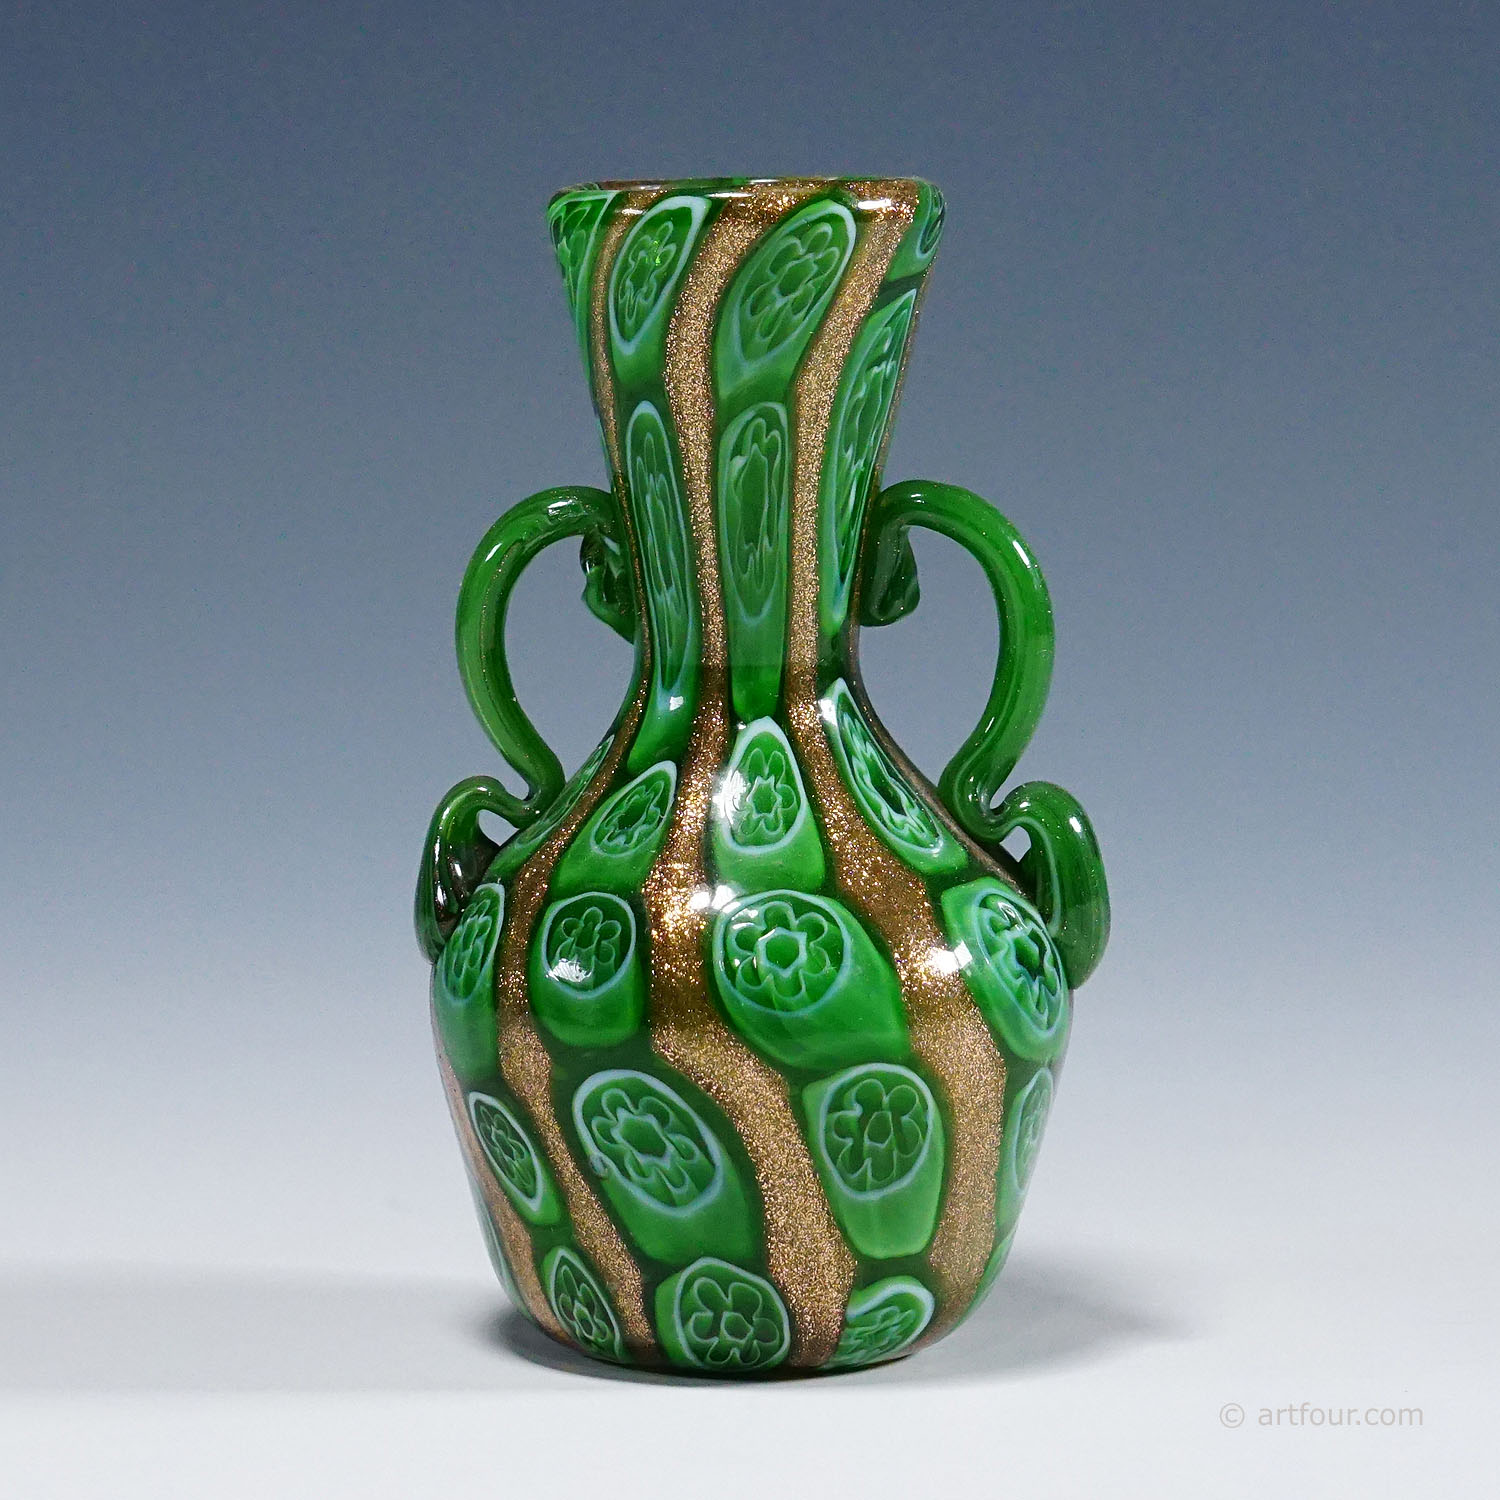 Antique Murrine Vase with Aventurine, Fratelli Toso Murano ca. 1920s